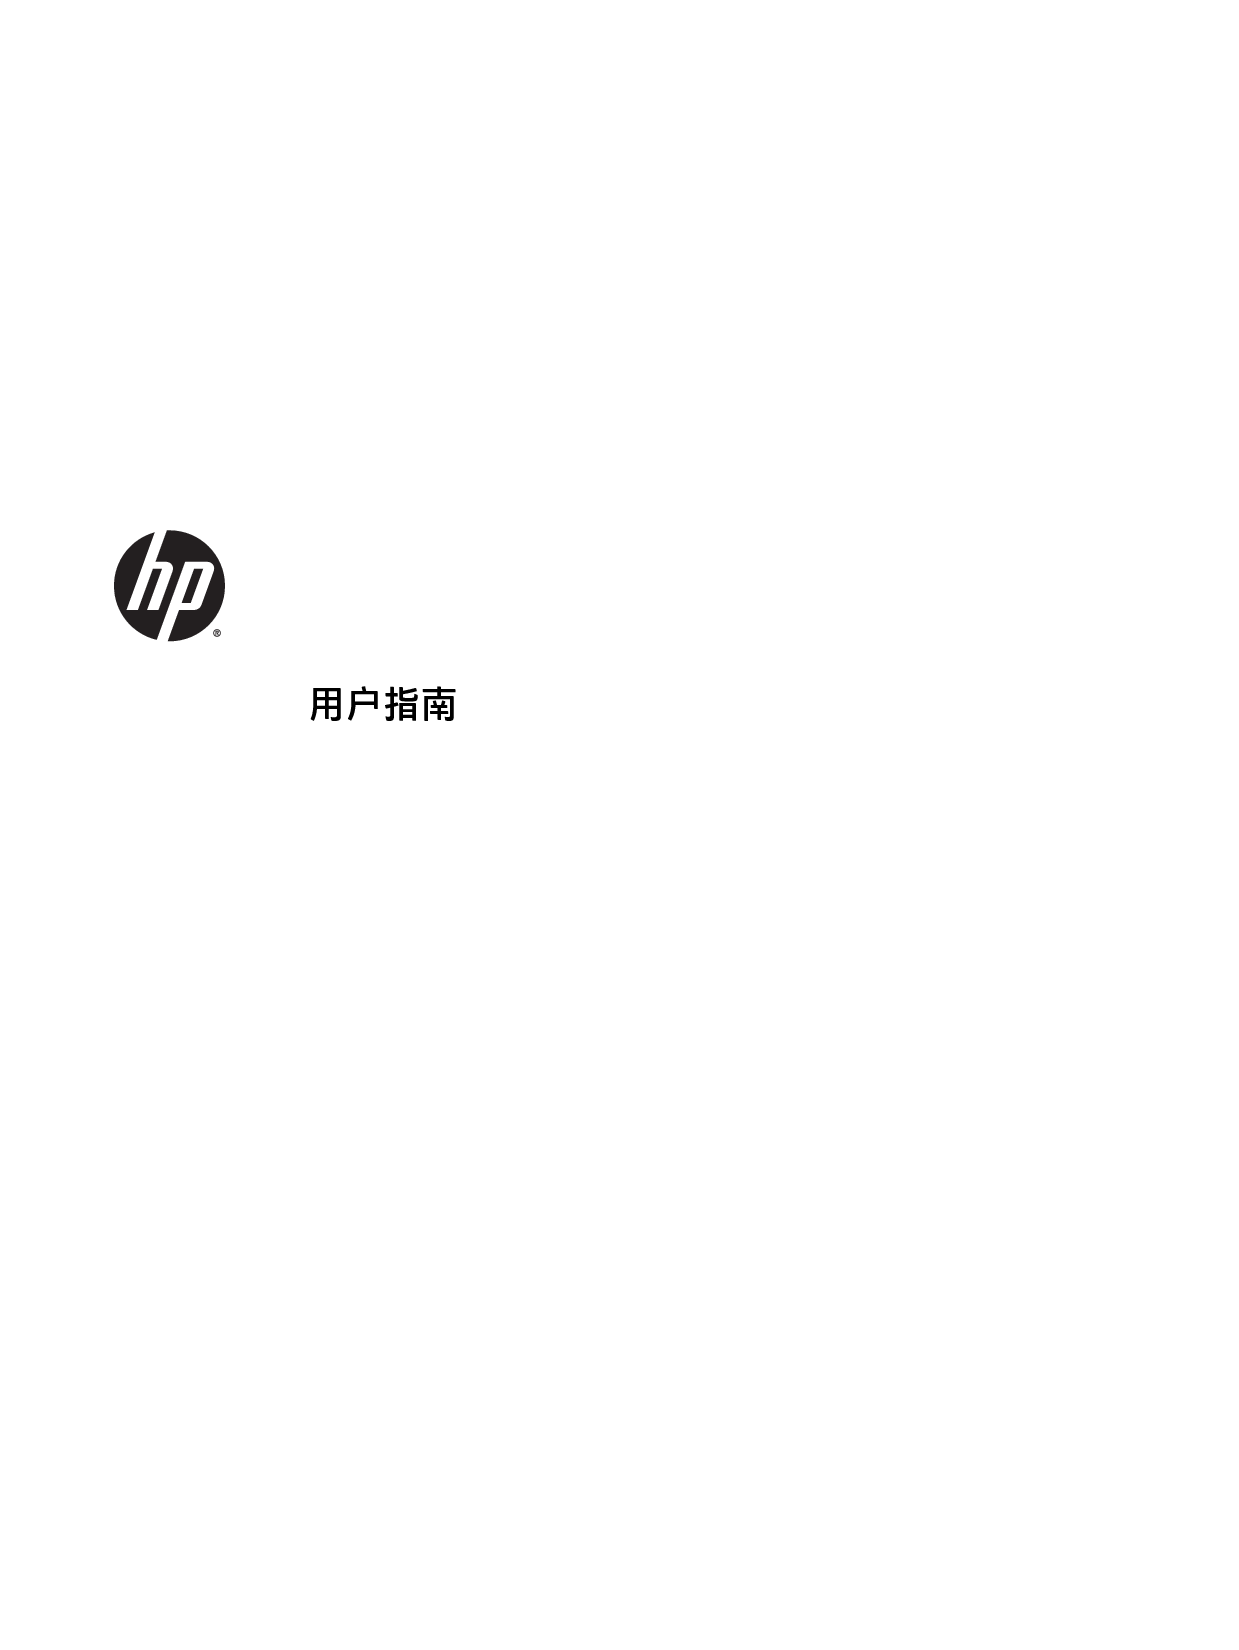 惠普 HP EliteBook 745 G3 Windows 10 用户指南 封面